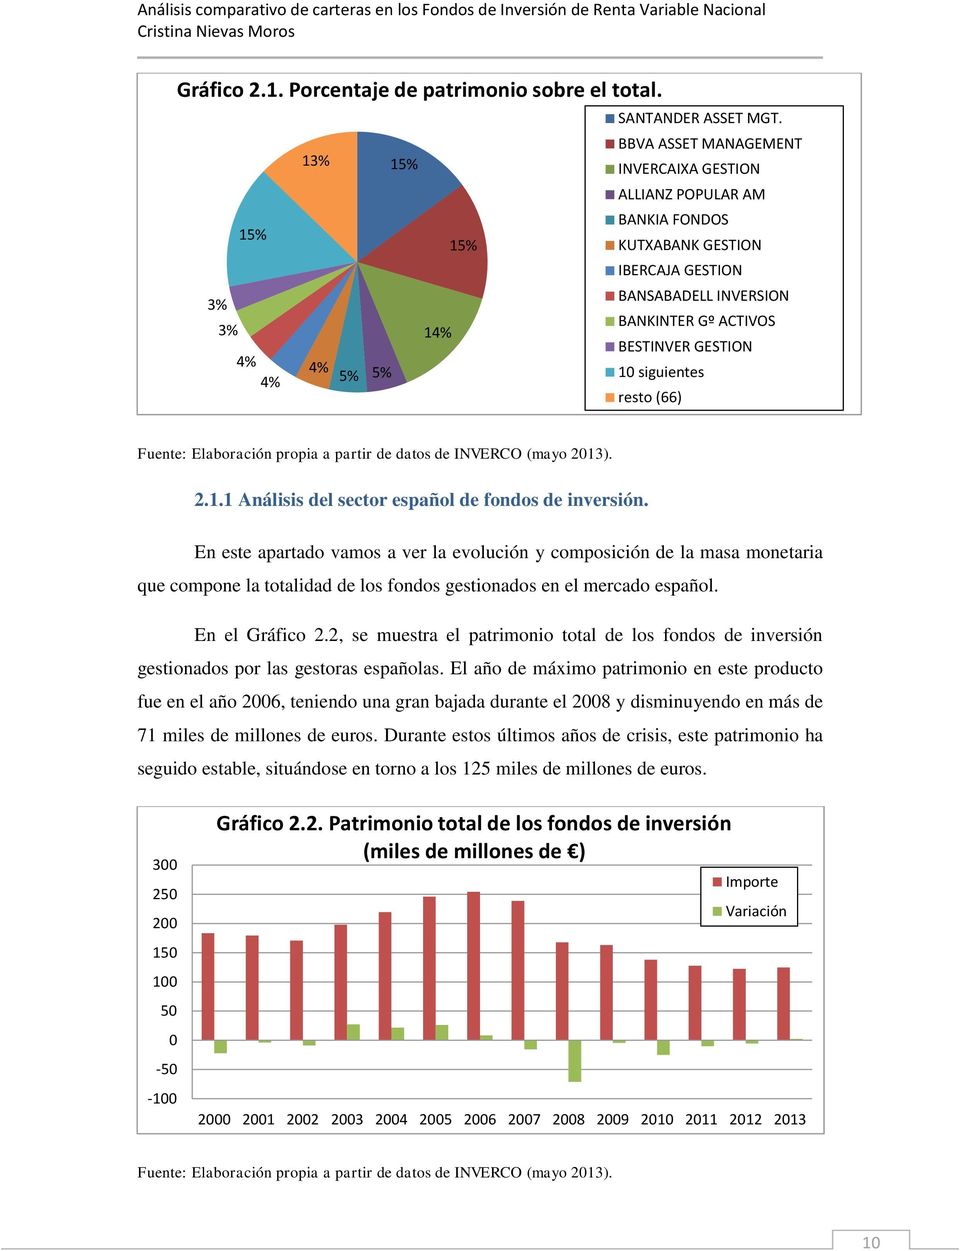 Fuente: Elaboración propia a partir de datos de INVERCO (mayo 2013). 2.1.1 Análisis del sector español de fondos de inversión.